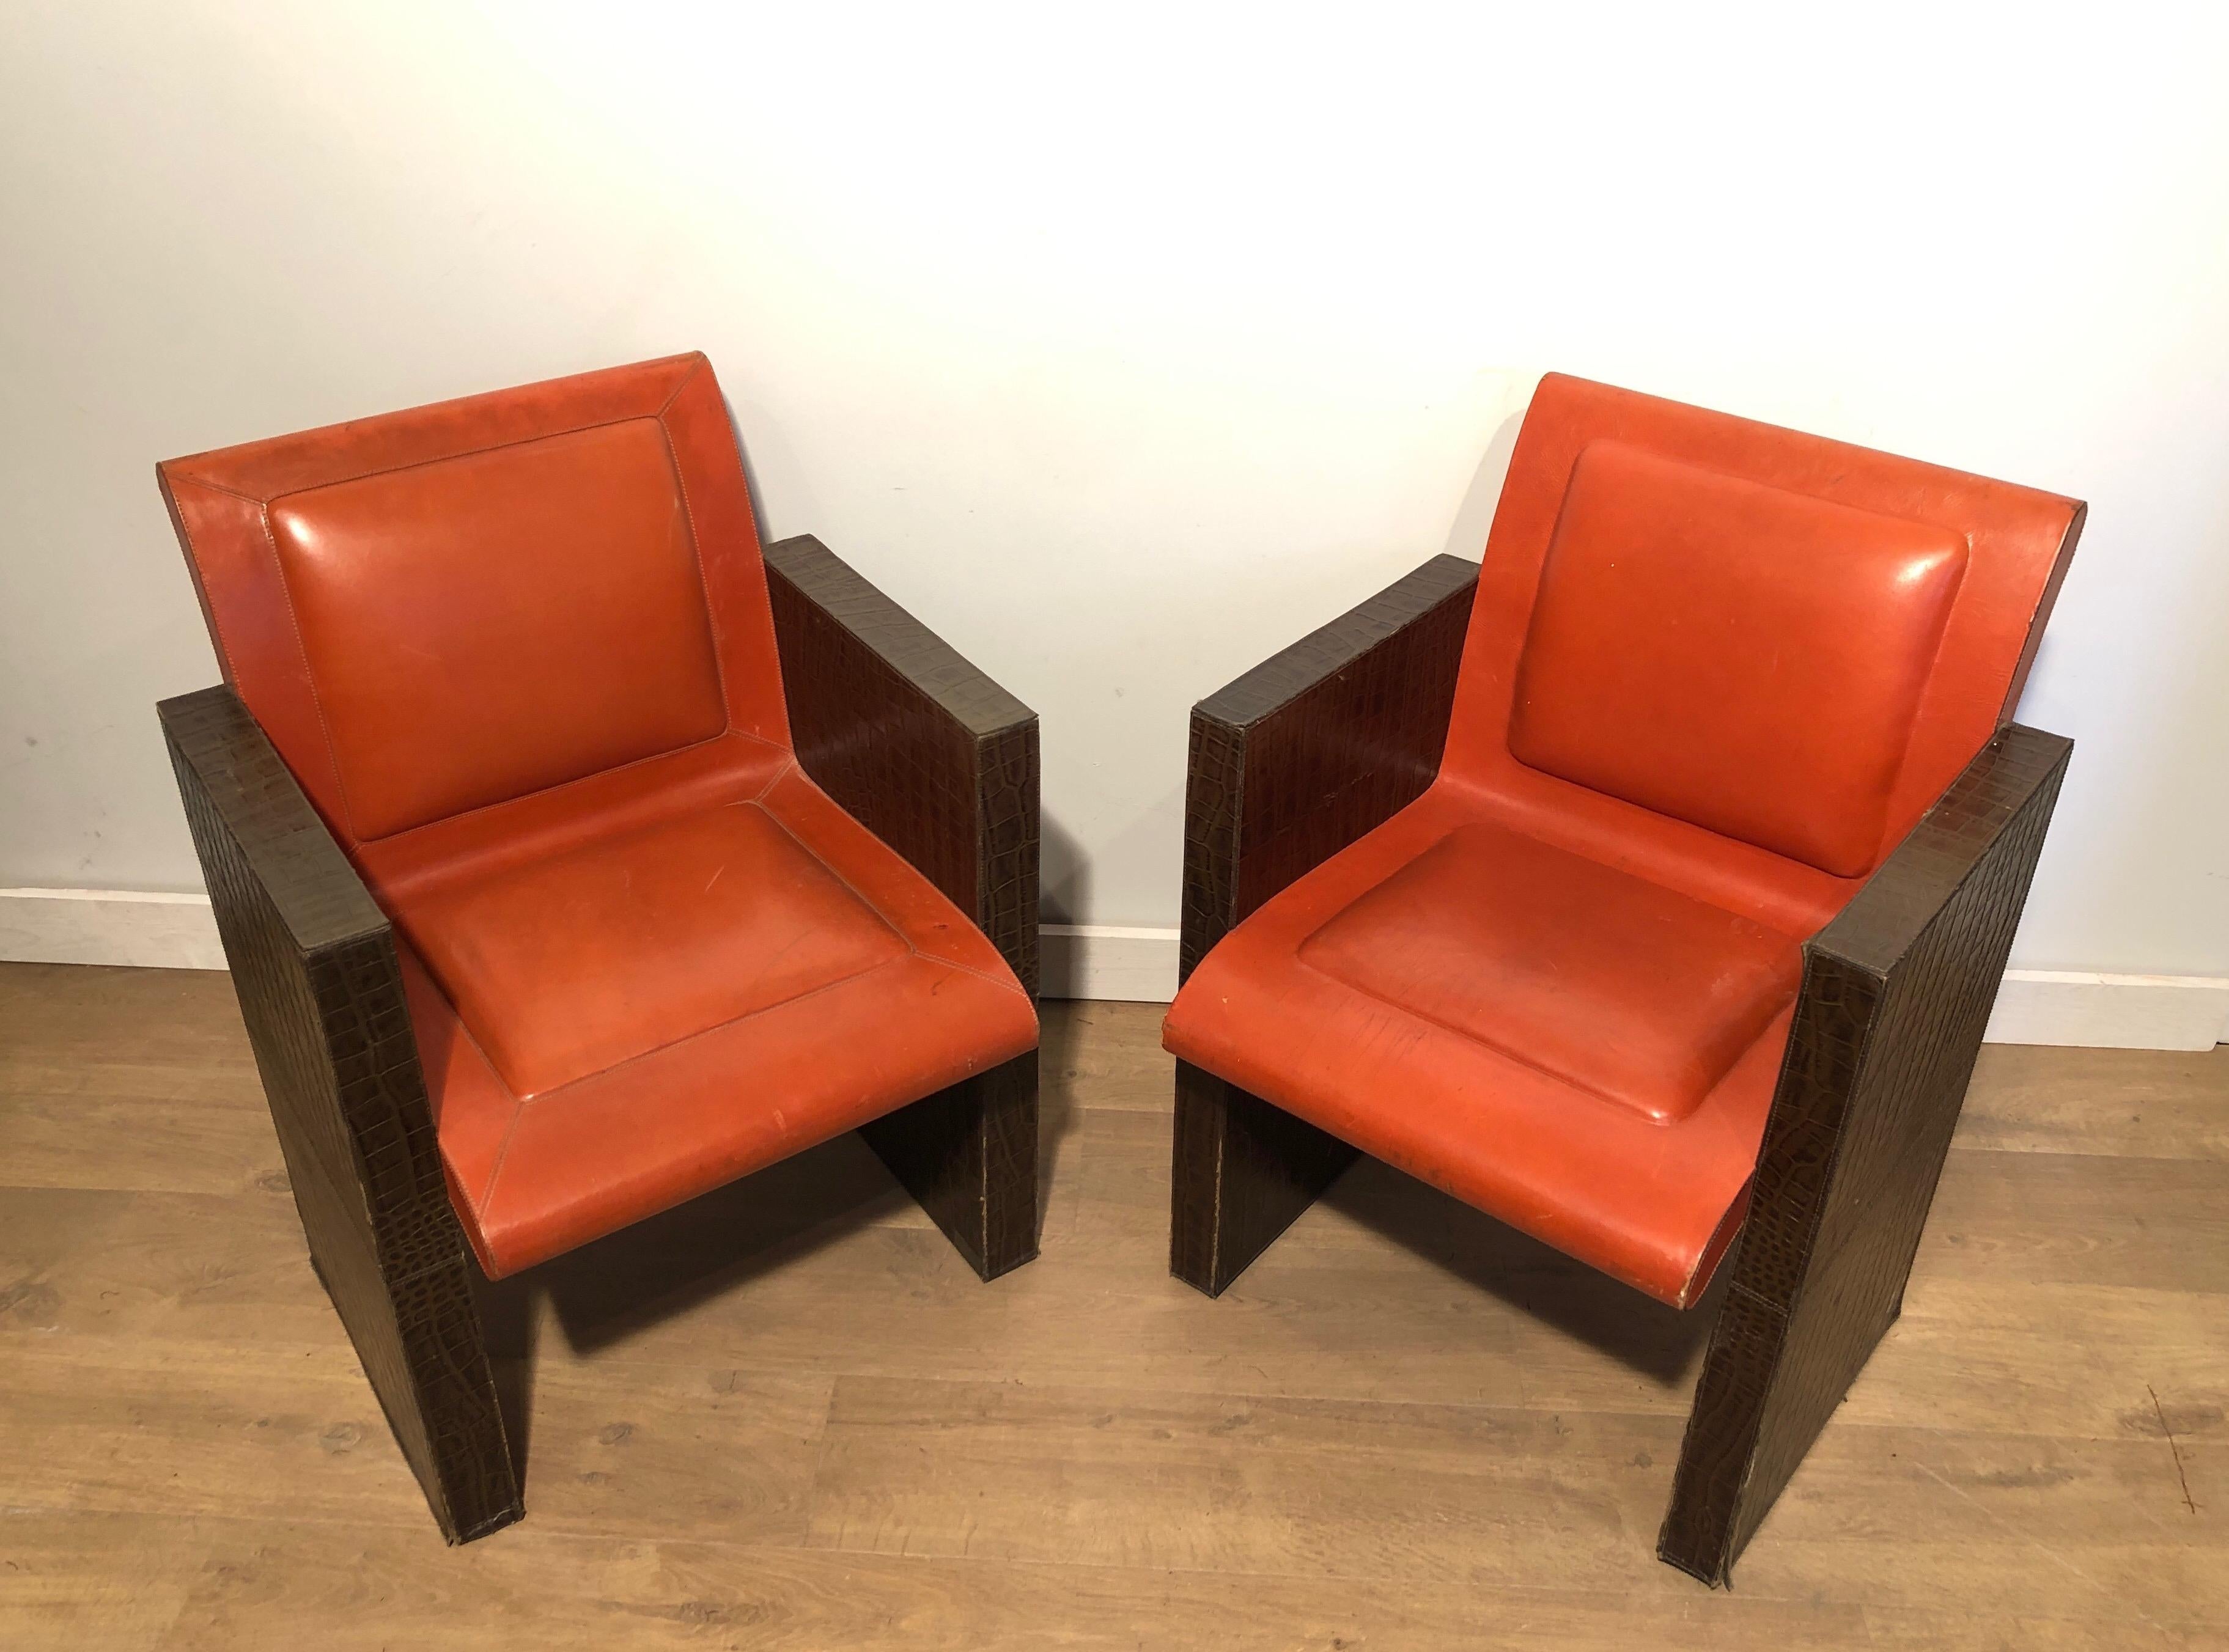 Diese sehr ungewöhnlichen Sessel sind aus einem orangefarbenen und braunen Leder gefertigt. Die Sessel können auch einzeln verkauft werden. Wir haben 3 davon zur Verfügung. Dies ist ein französisches Werk. CIRCA 1970